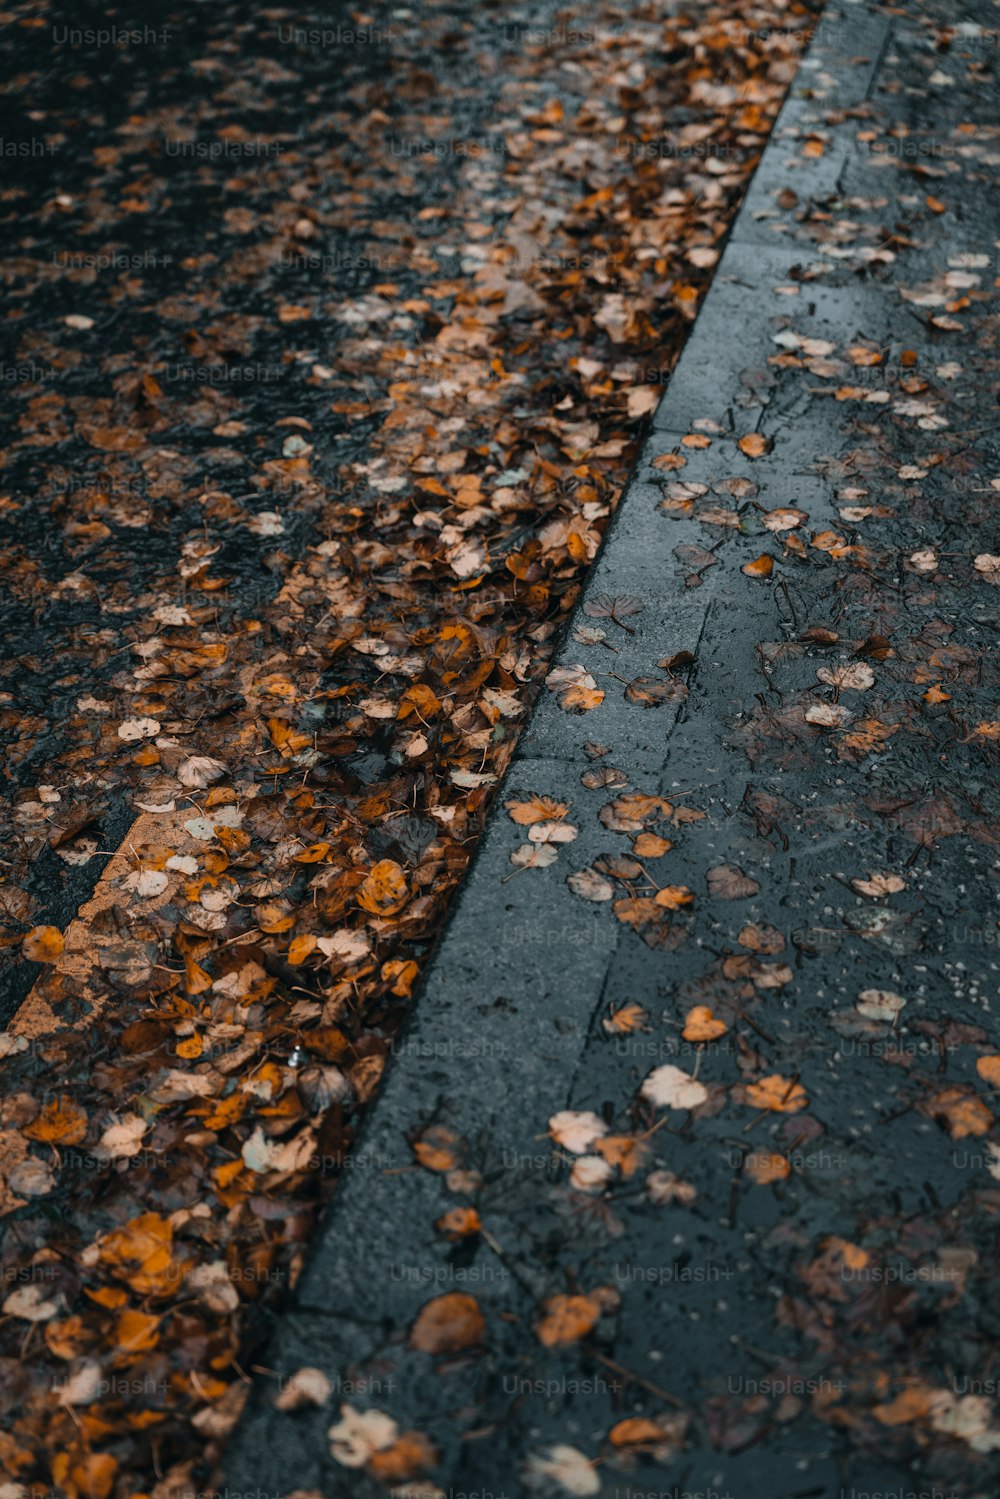 un segnale di stop seduto sul ciglio di una strada coperta di foglie